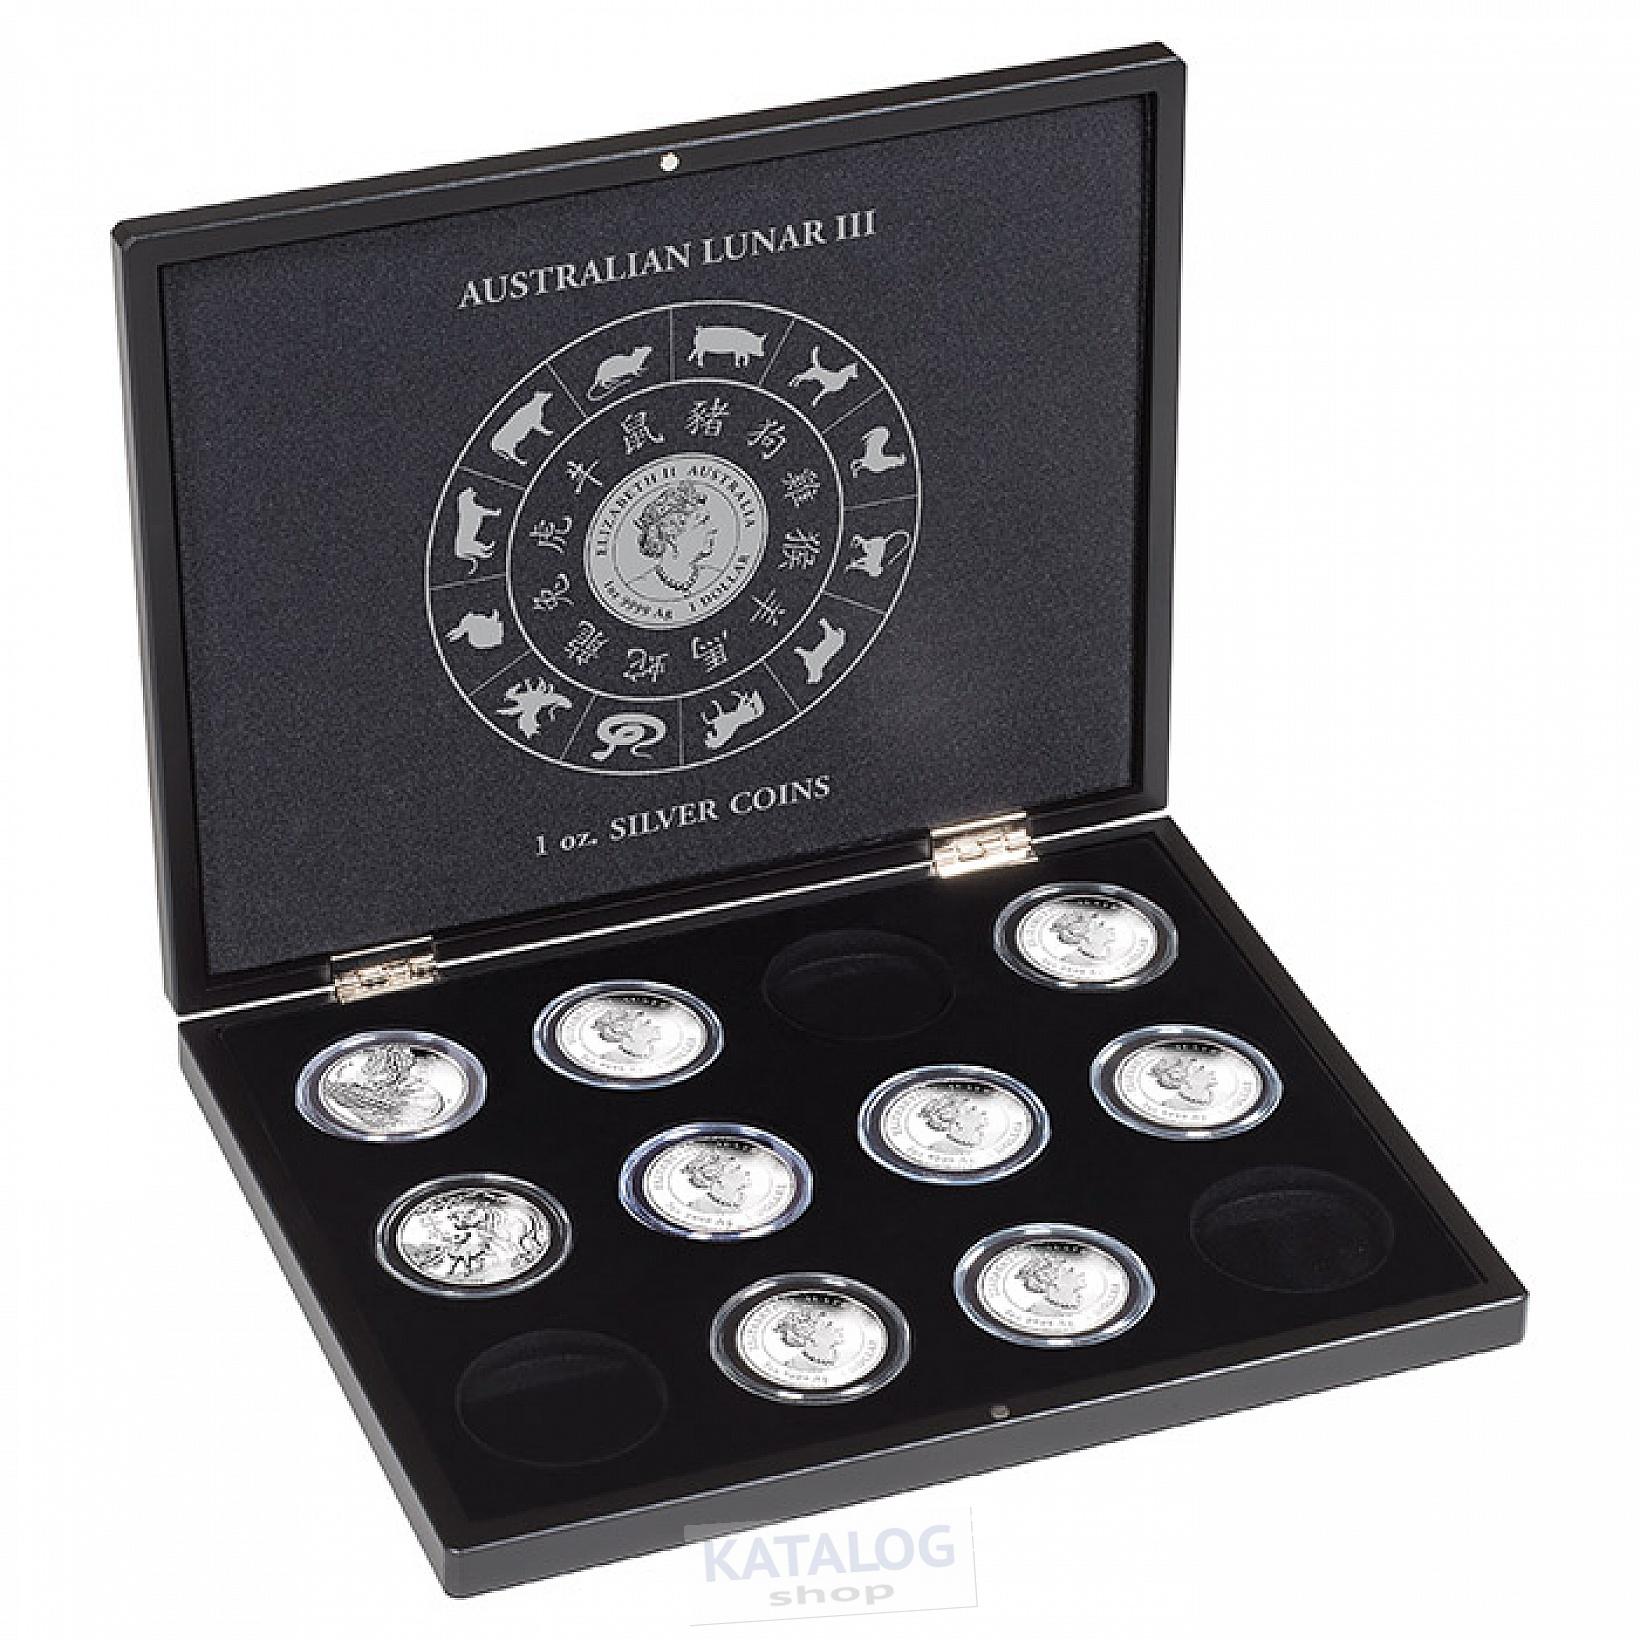 Leuchtturm Kazeta pro 12 stříbrných mincí 1 Oz Lunarní série III